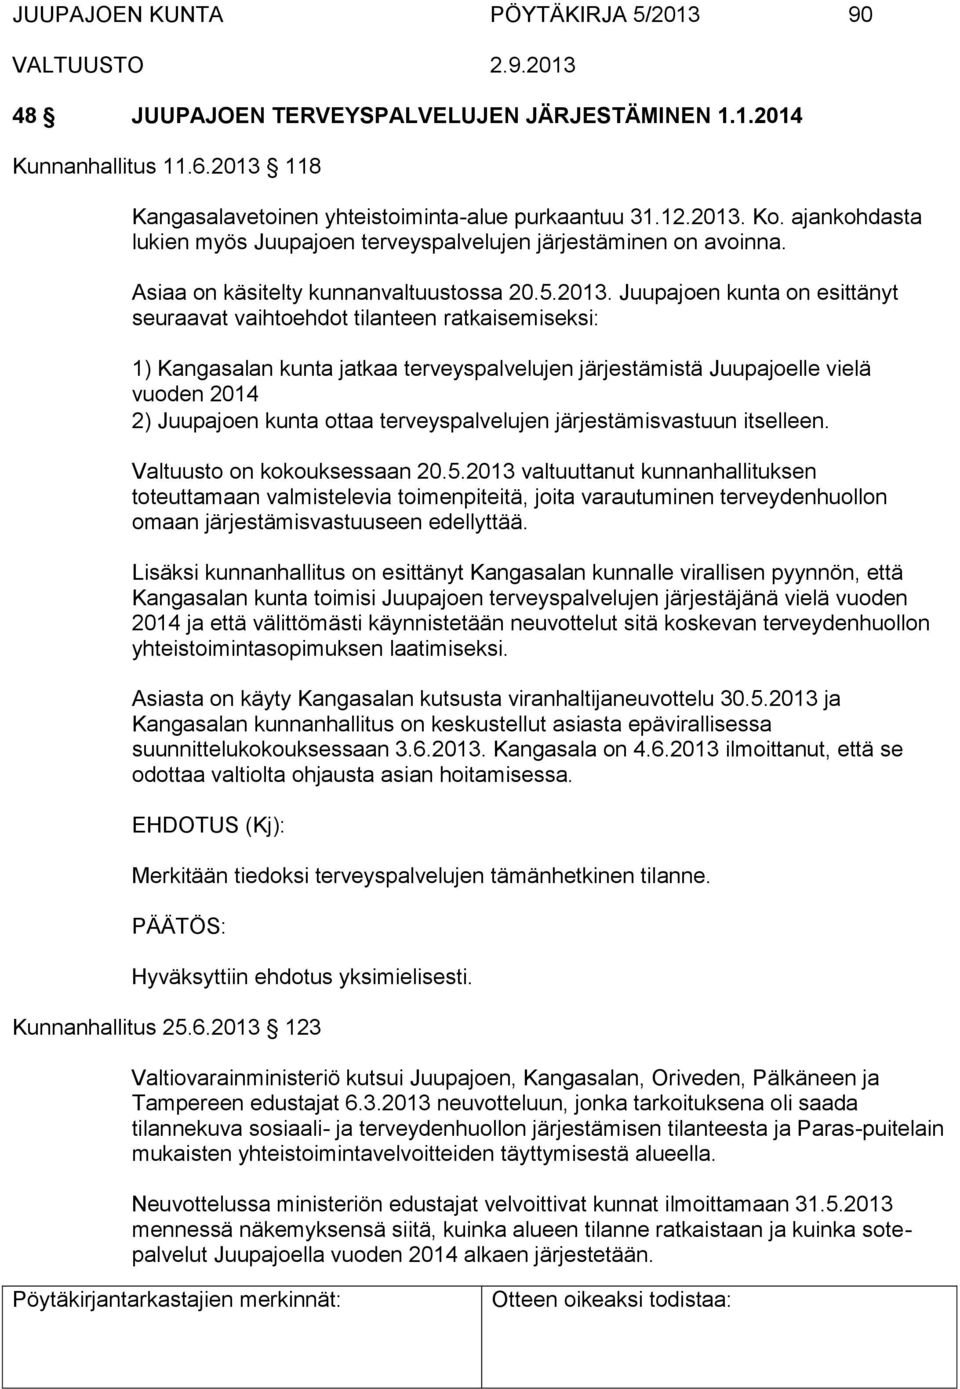 Juupajoen kunta on esittänyt seuraavat vaihtoehdot tilanteen ratkaisemiseksi: 1) Kangasalan kunta jatkaa terveyspalvelujen järjestämistä Juupajoelle vielä vuoden 2014 2) Juupajoen kunta ottaa